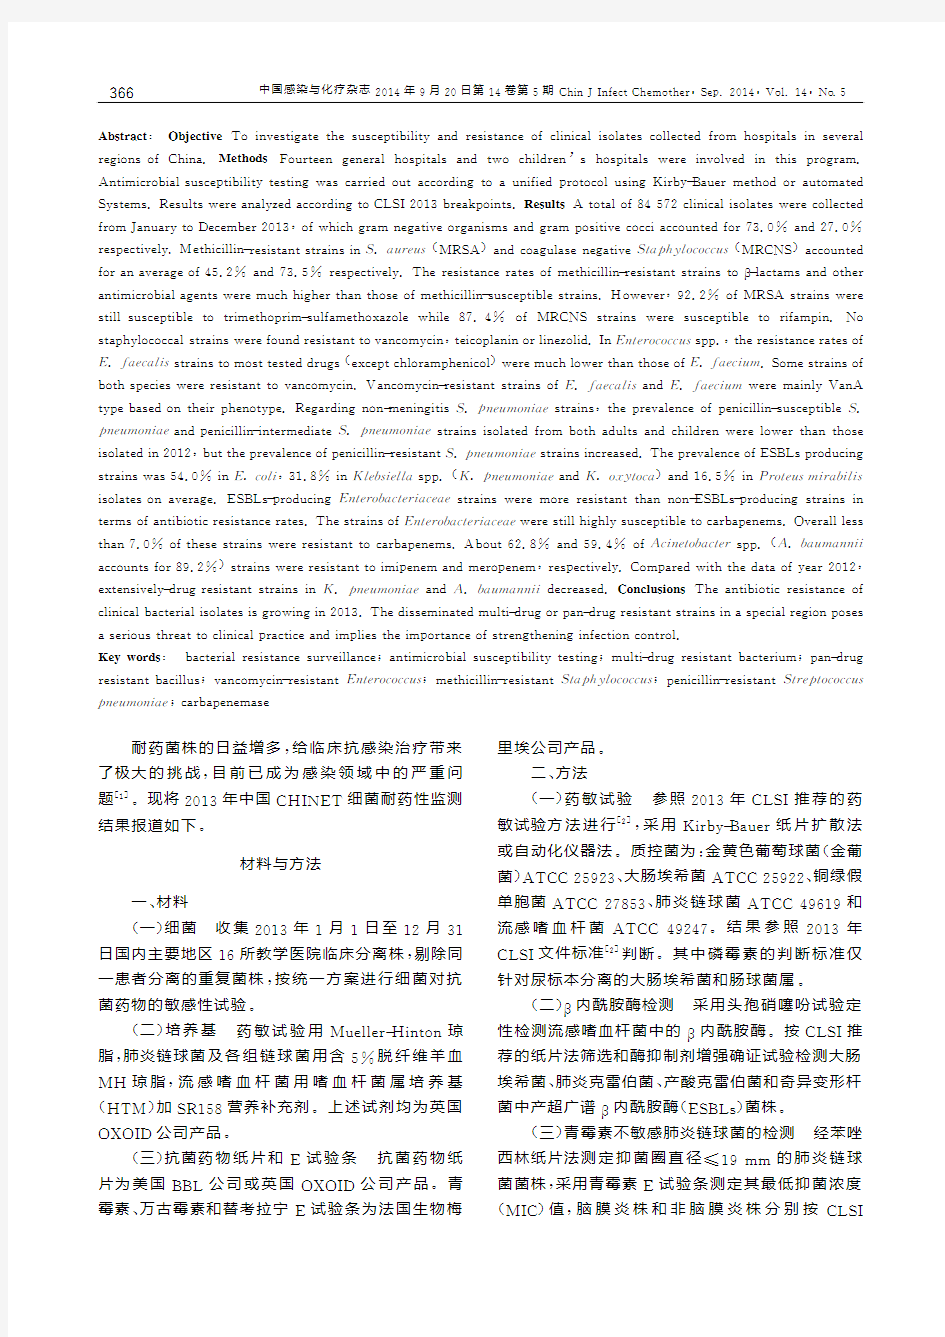 2013年中国CHINET细菌耐药性监测